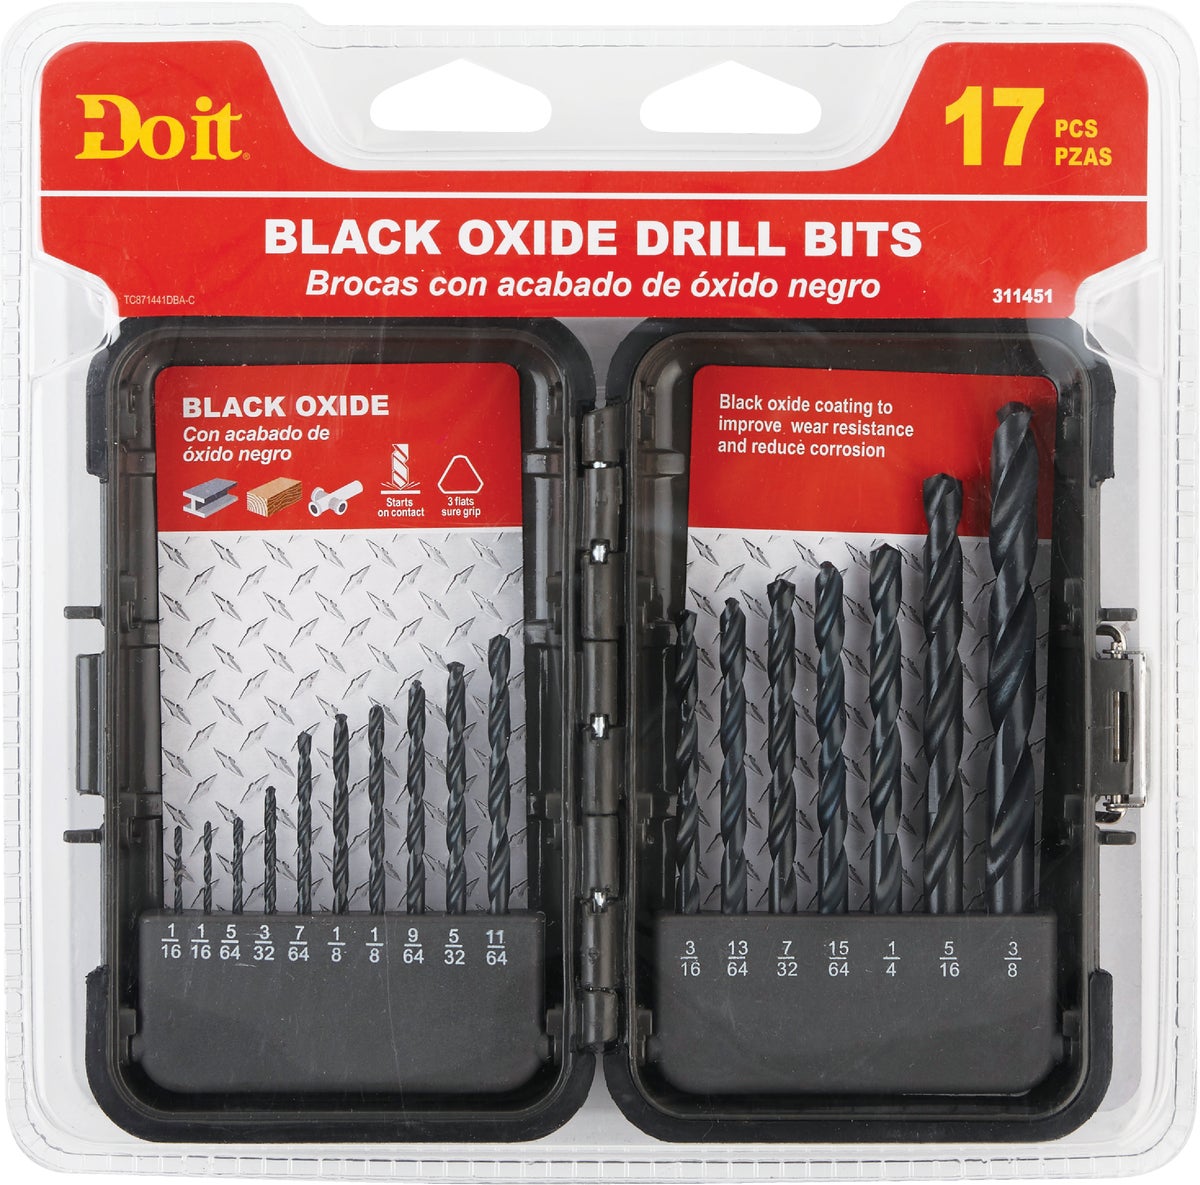 DW1167-Drill Bit Set-DEWALT/BLACK & DECKER